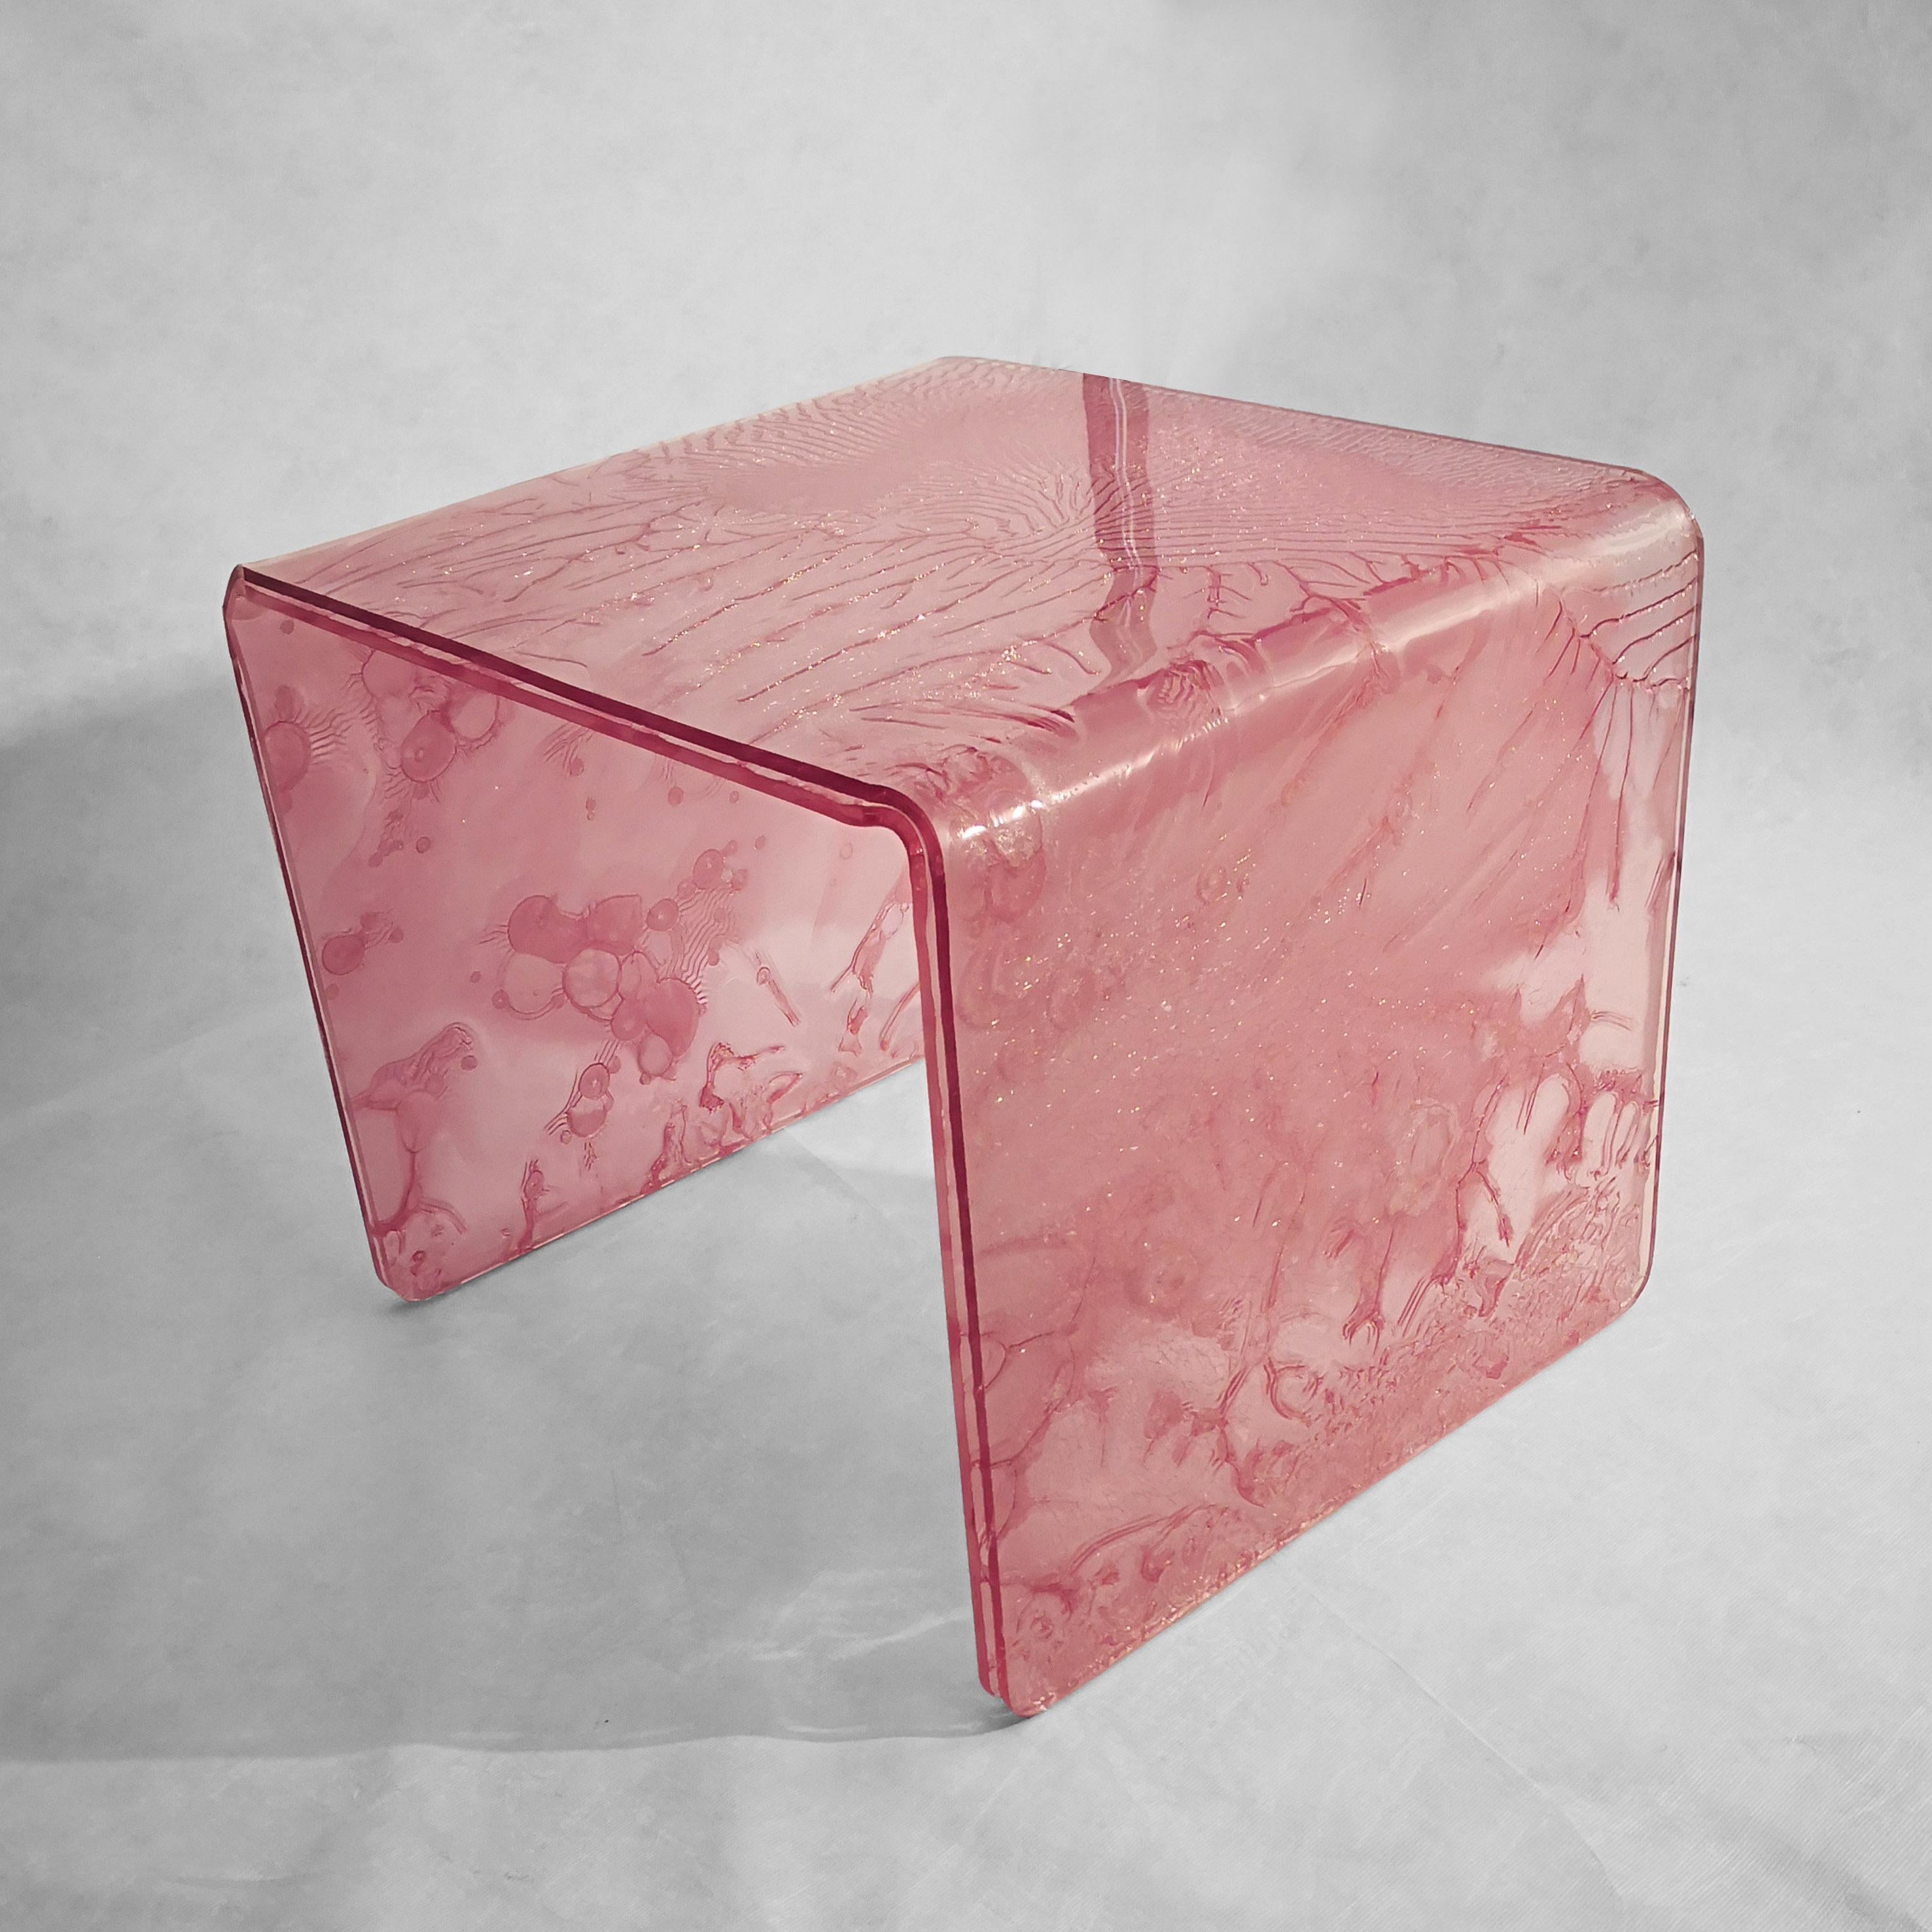 Beistelltisch, handgefertigt aus transparentem rosa Acryl, gefärbt mit einer innovativen Technologie.
Das Material wird durch die Verschmelzung von drei Platten hergestellt, von denen eine
teilweise ausgehärtetes Zentrum.
Dieser Prozess erzeugt